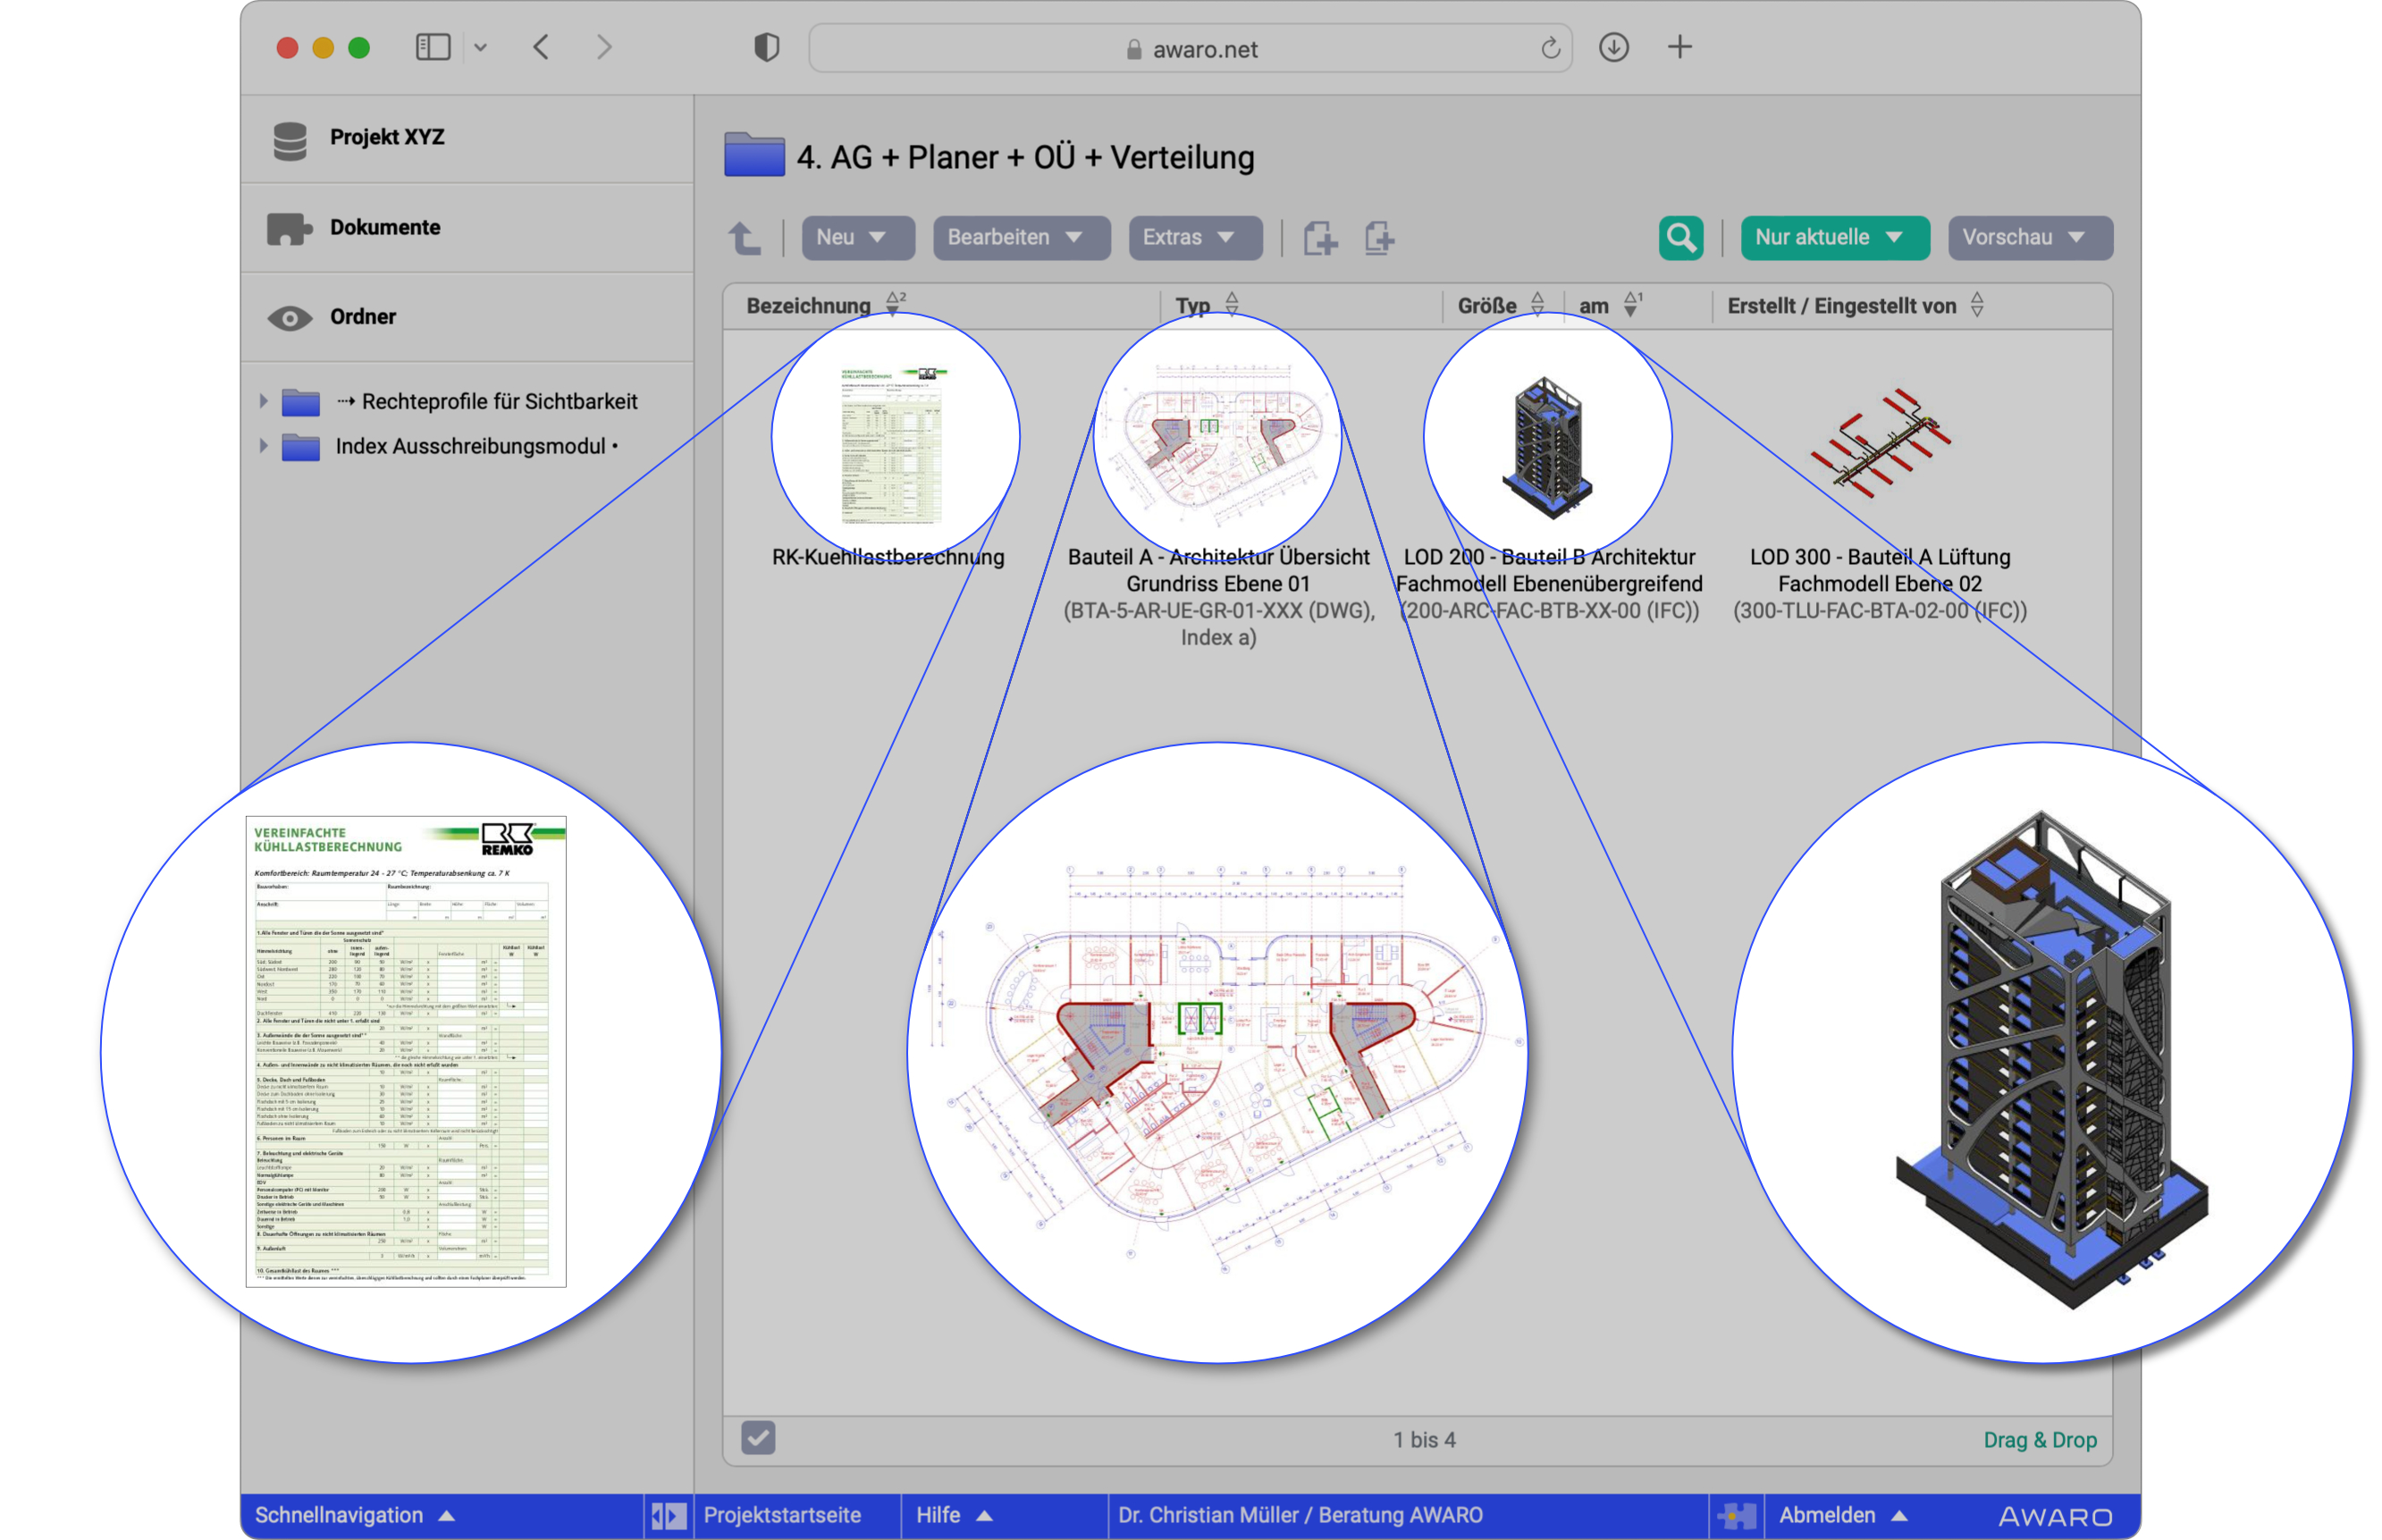 Anzeige von 3D-Modell (IFC), 2D-Plan (DWG) und PDF-Dokument als Miniaturpreview in der Vorschauansicht